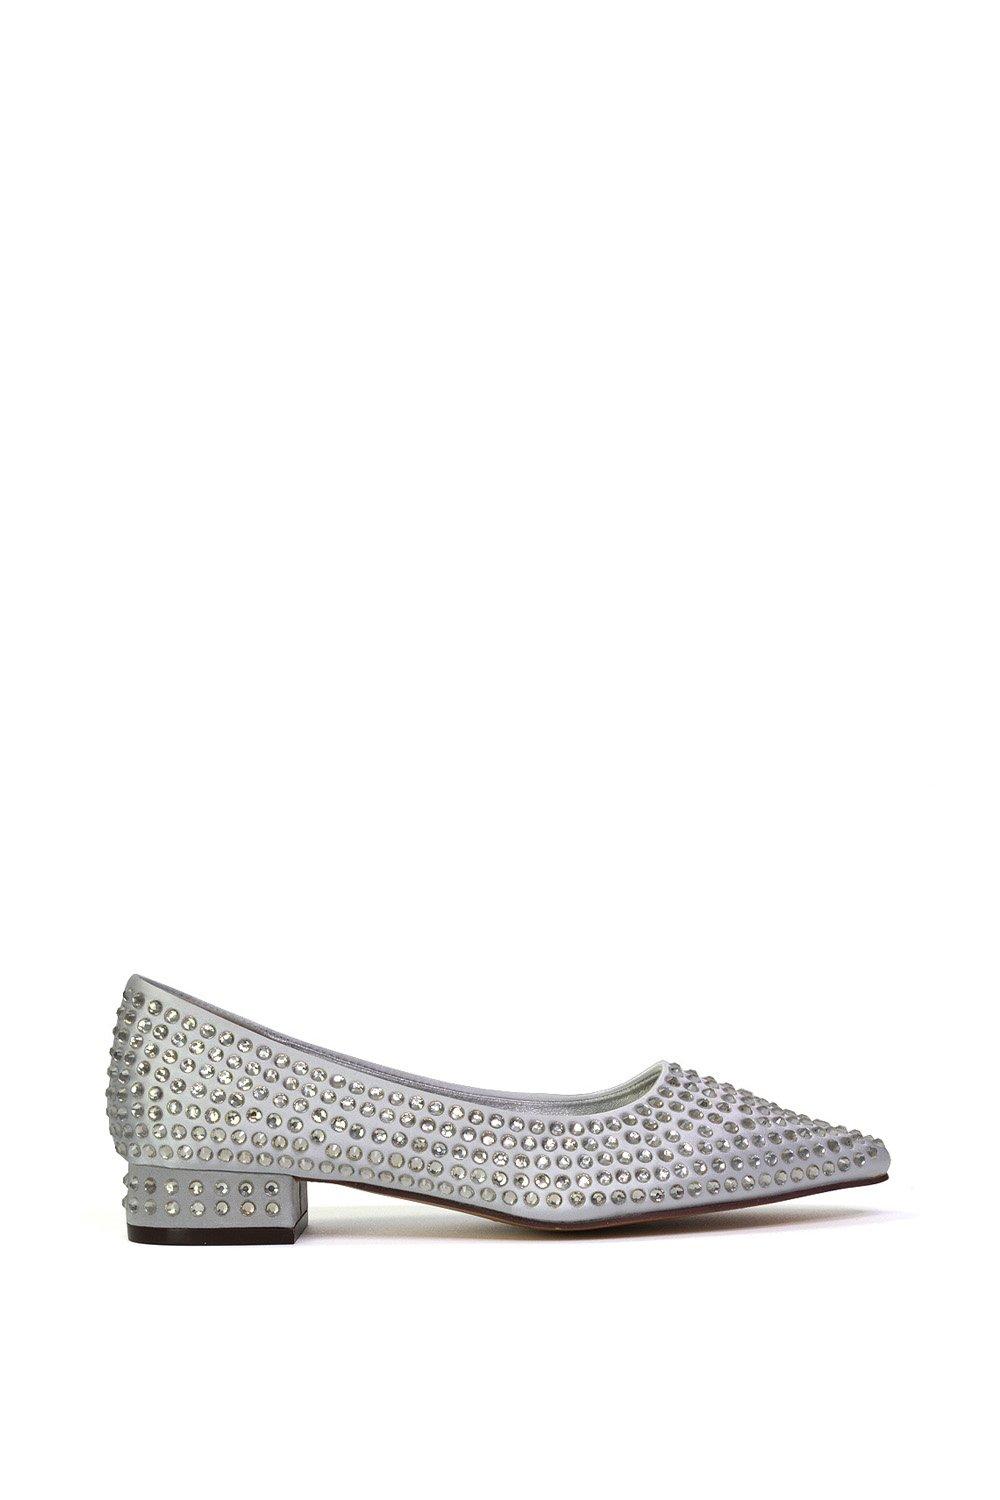 Heels | 'Gemini' Diamante Sparkly Heels Wedding Shoes Bridal Heels | XY ...